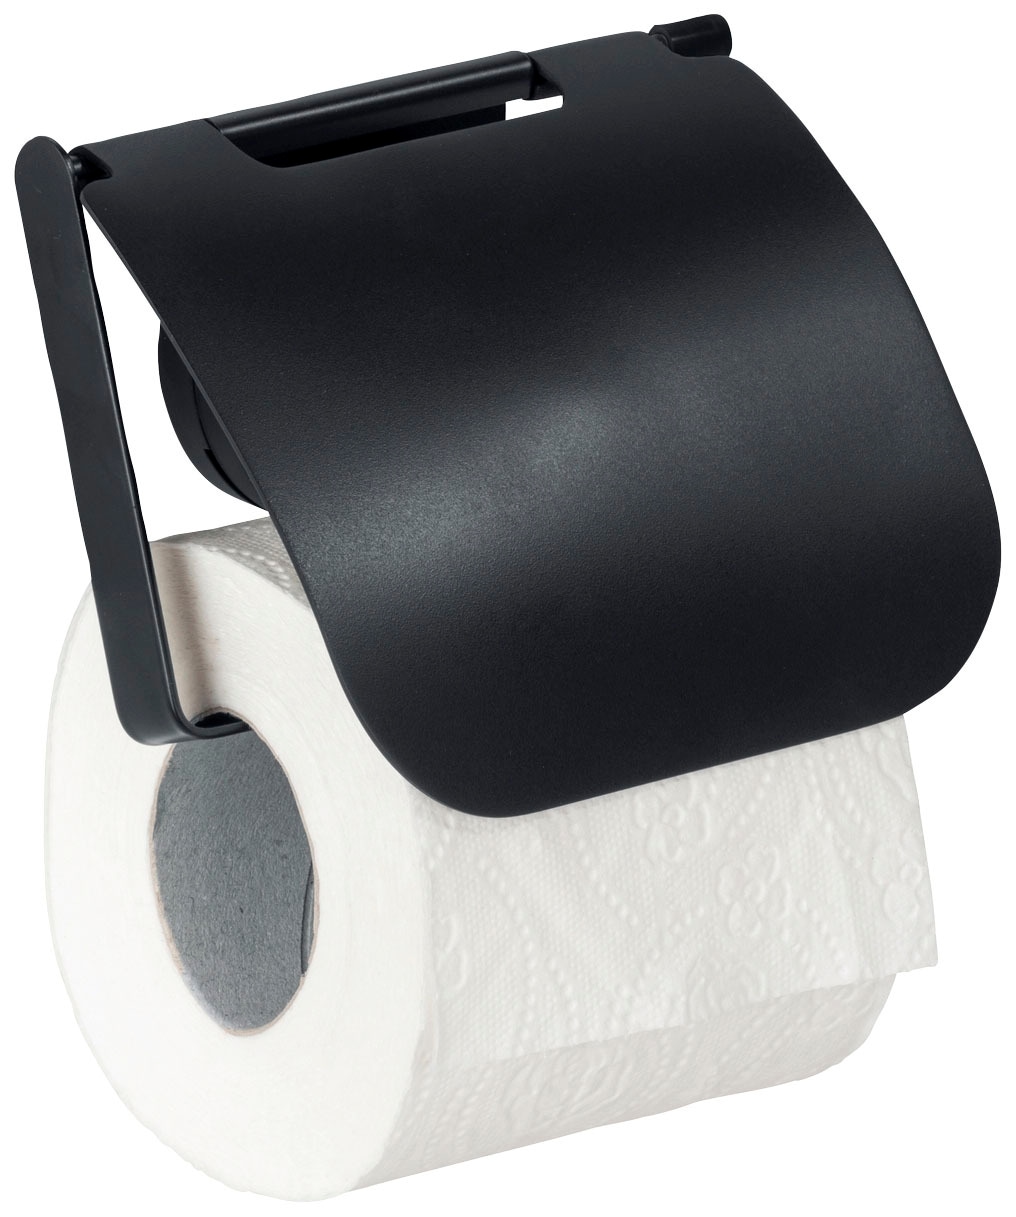 WENKO Toilettenpapierhalter »Static-Loc® Plus Pavia«, mit Deckel, Befestigen ohne Bohren